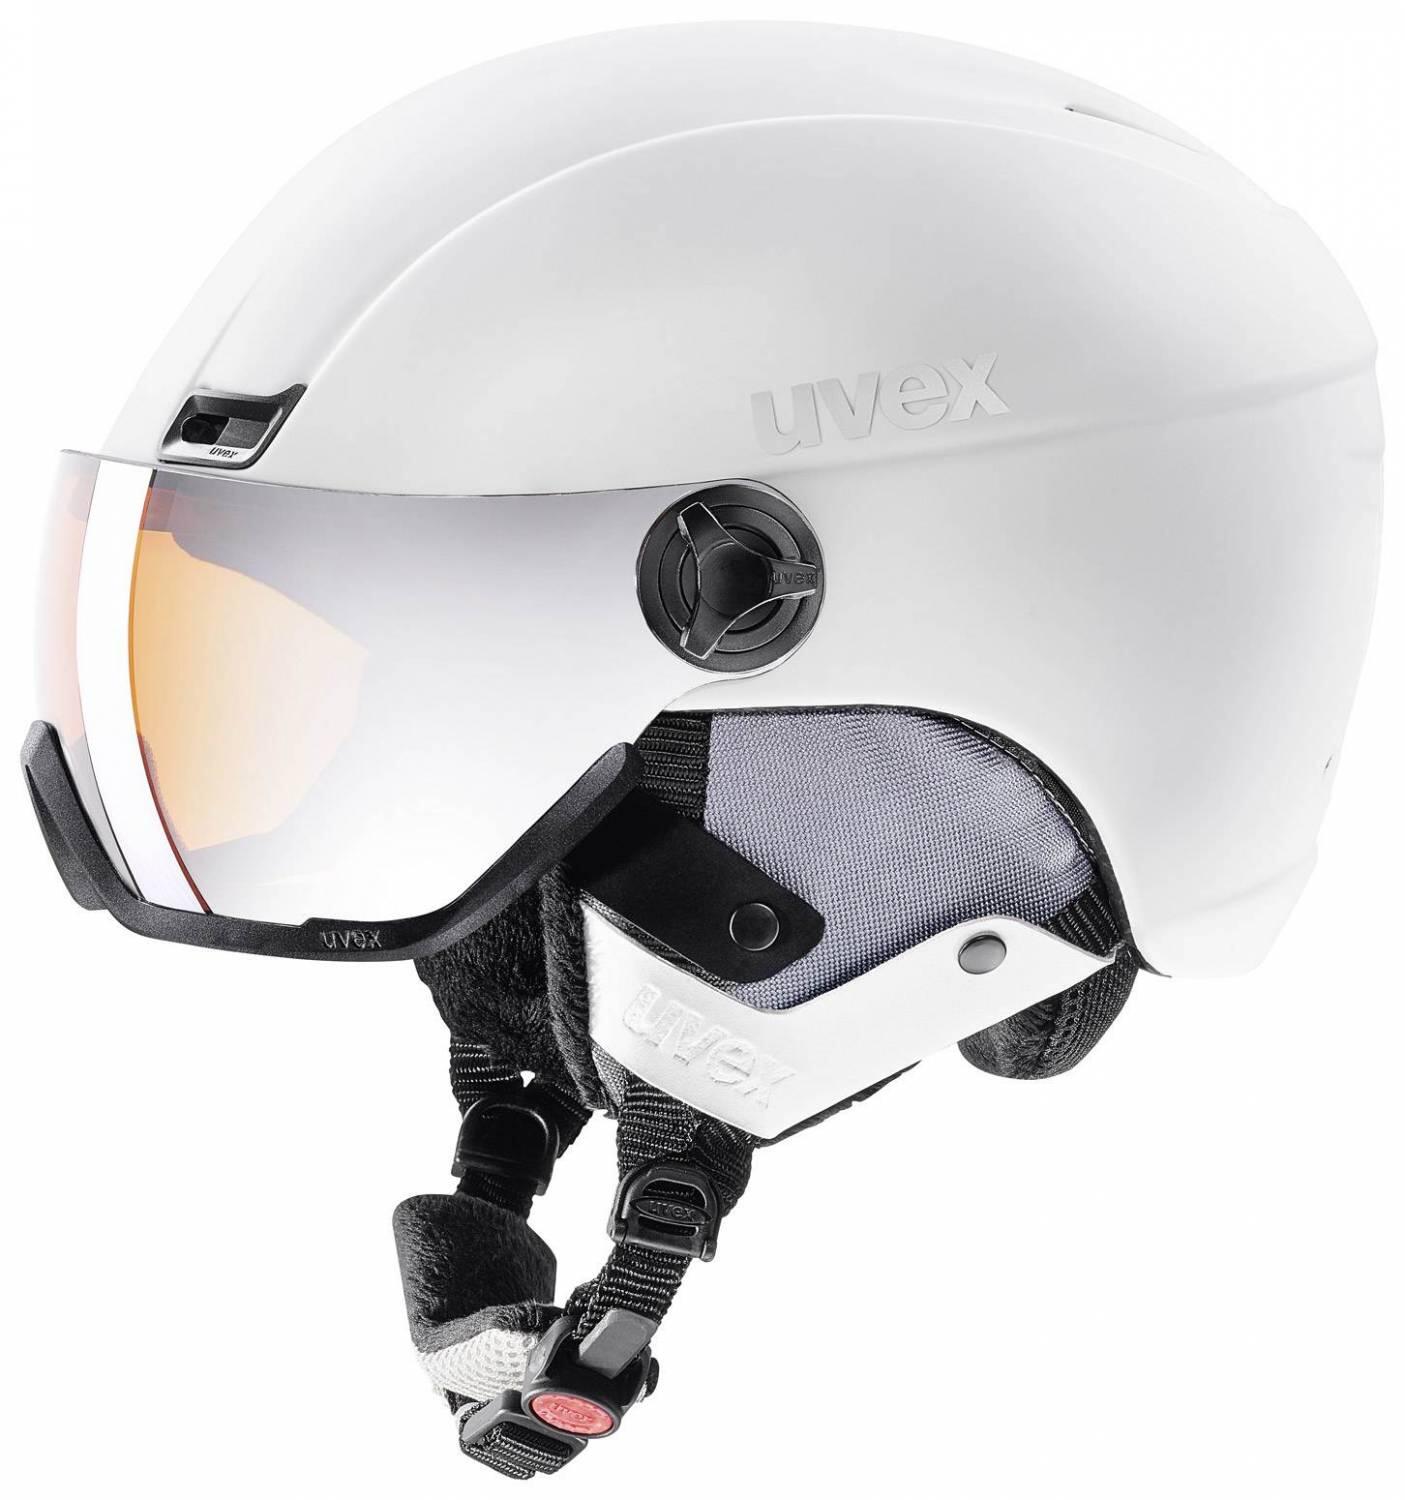 Uvex hlmt 400 visor style skihelm (größe: 53-58 cm, 40 navyblue mat)